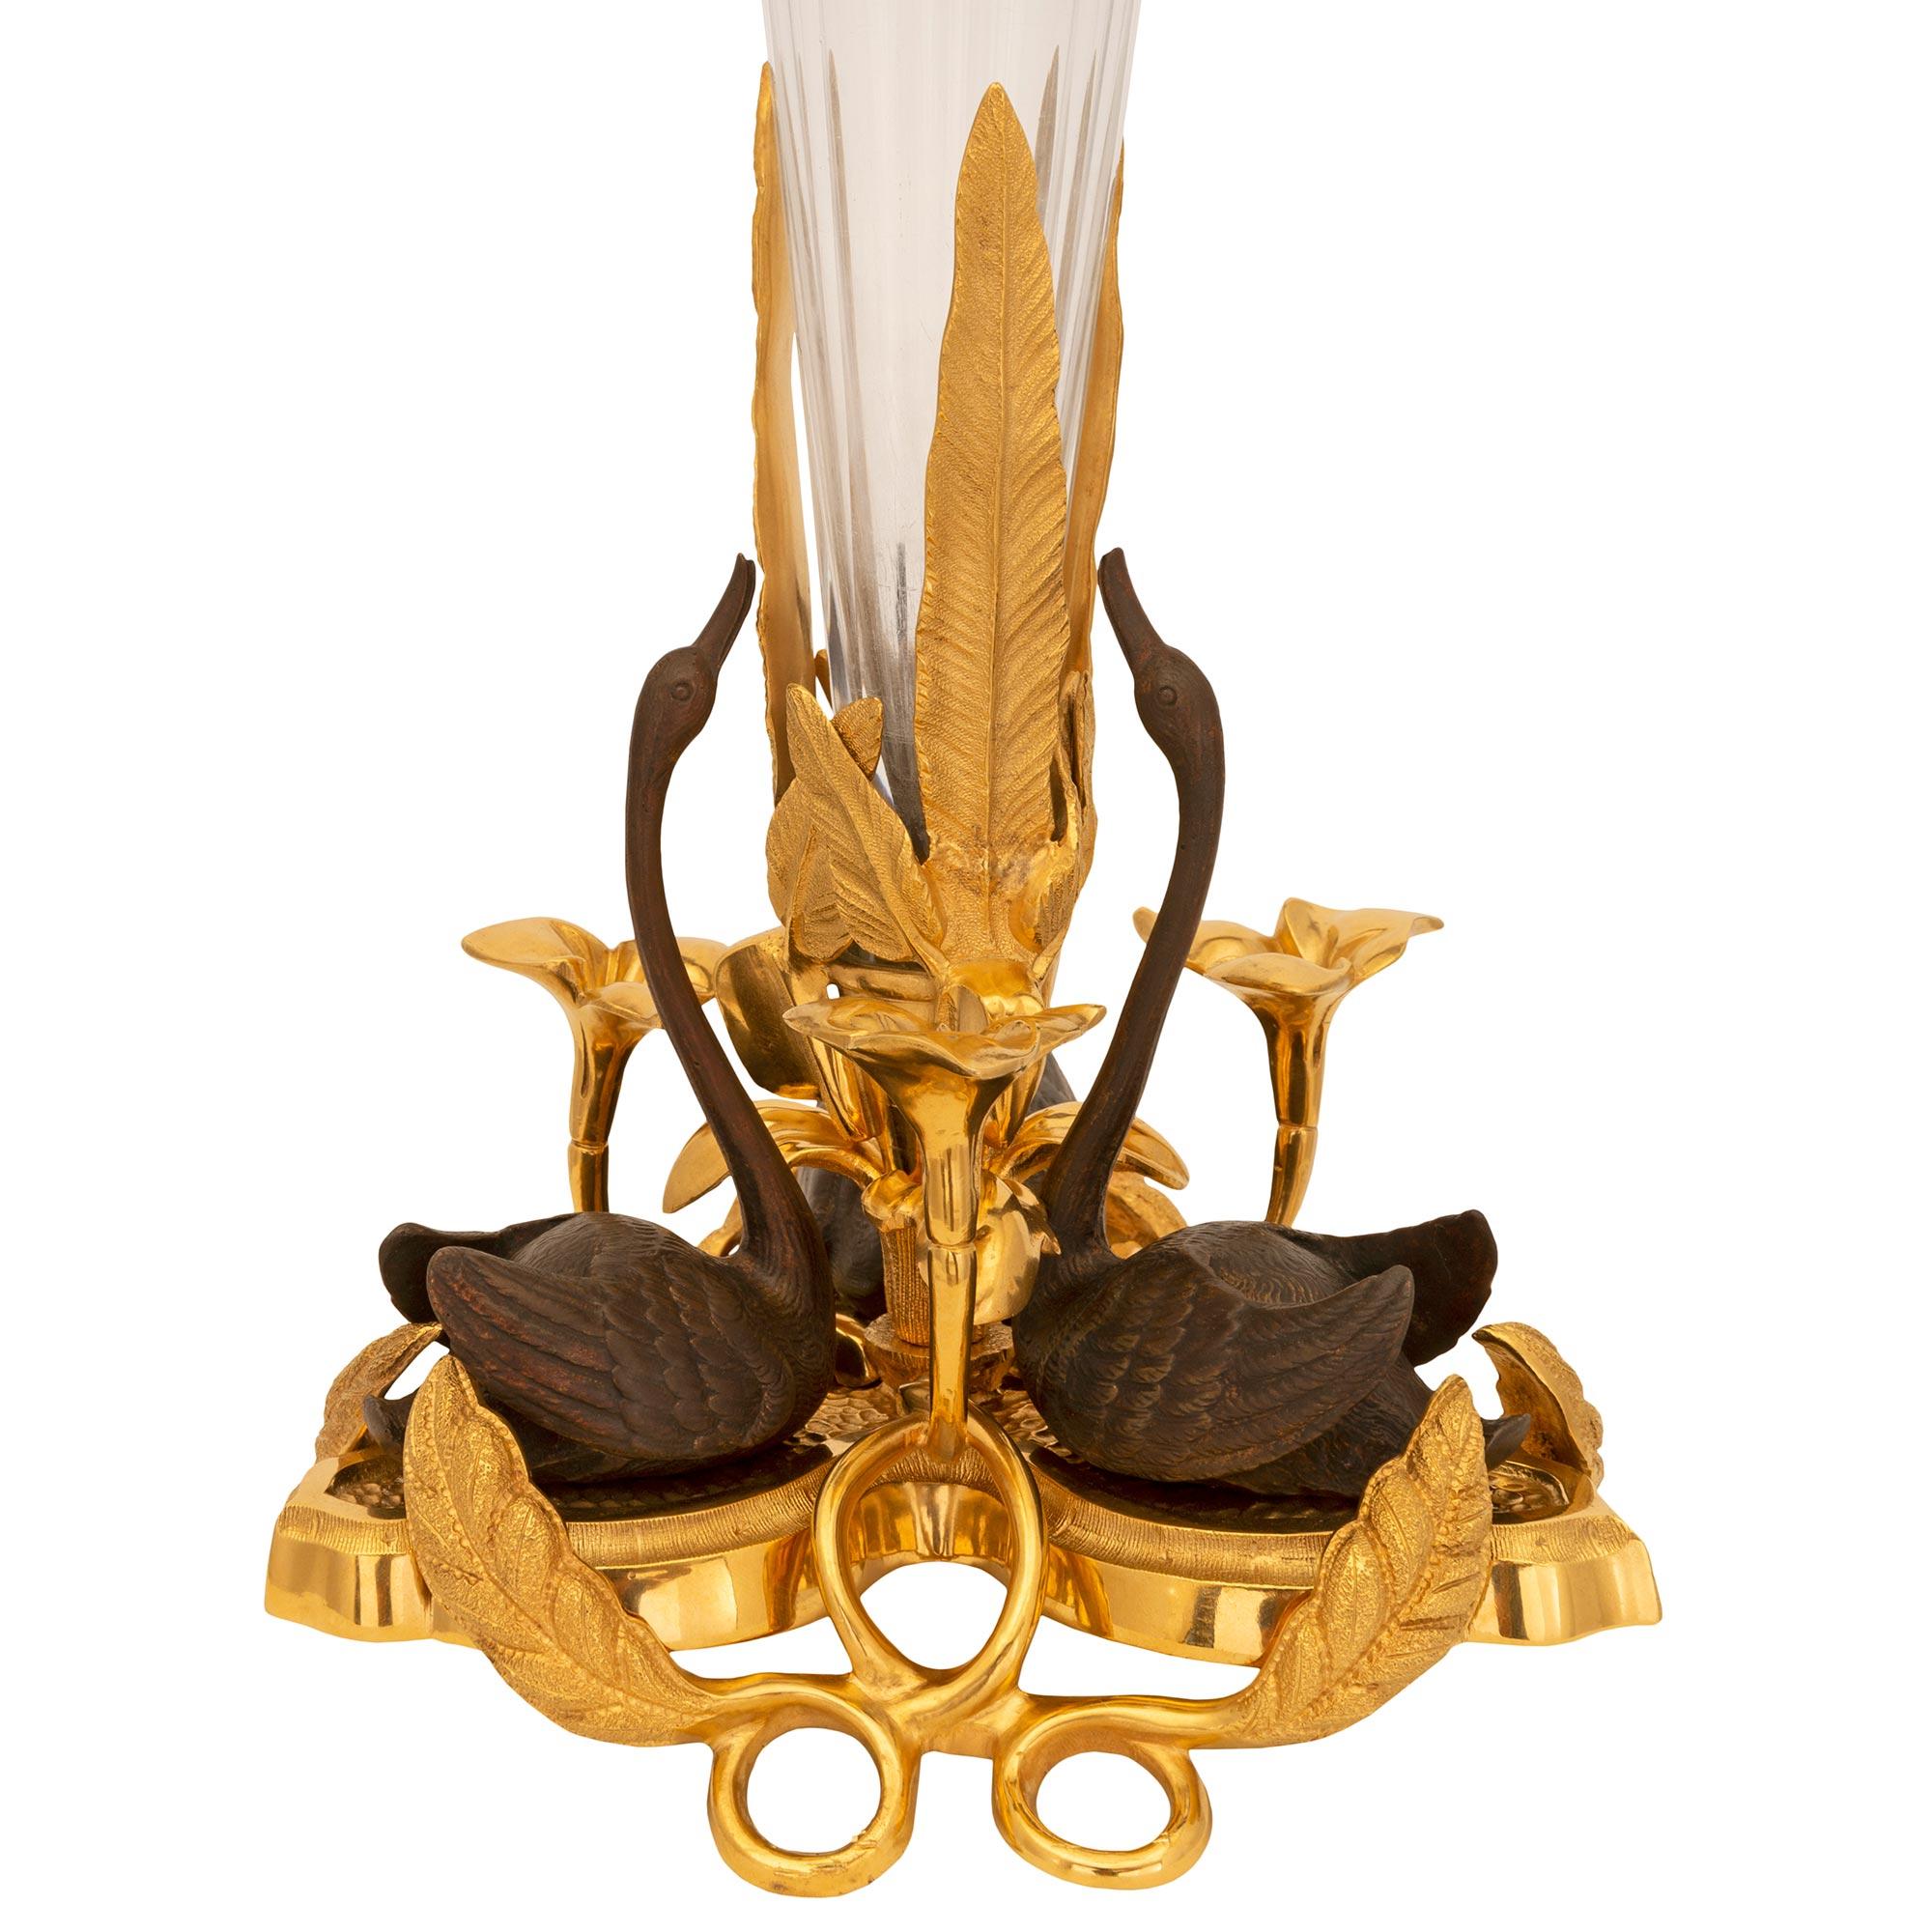 Un charmant et très élégant vase en bronze doré, bronze patiné et cristal de Baccarat, d'époque Louis XVI et Belle Époque. Le magnifique vase est surélevé par une base percée en bronze doré avec de fins mouvements feuillagés, de jolis nénuphars, des